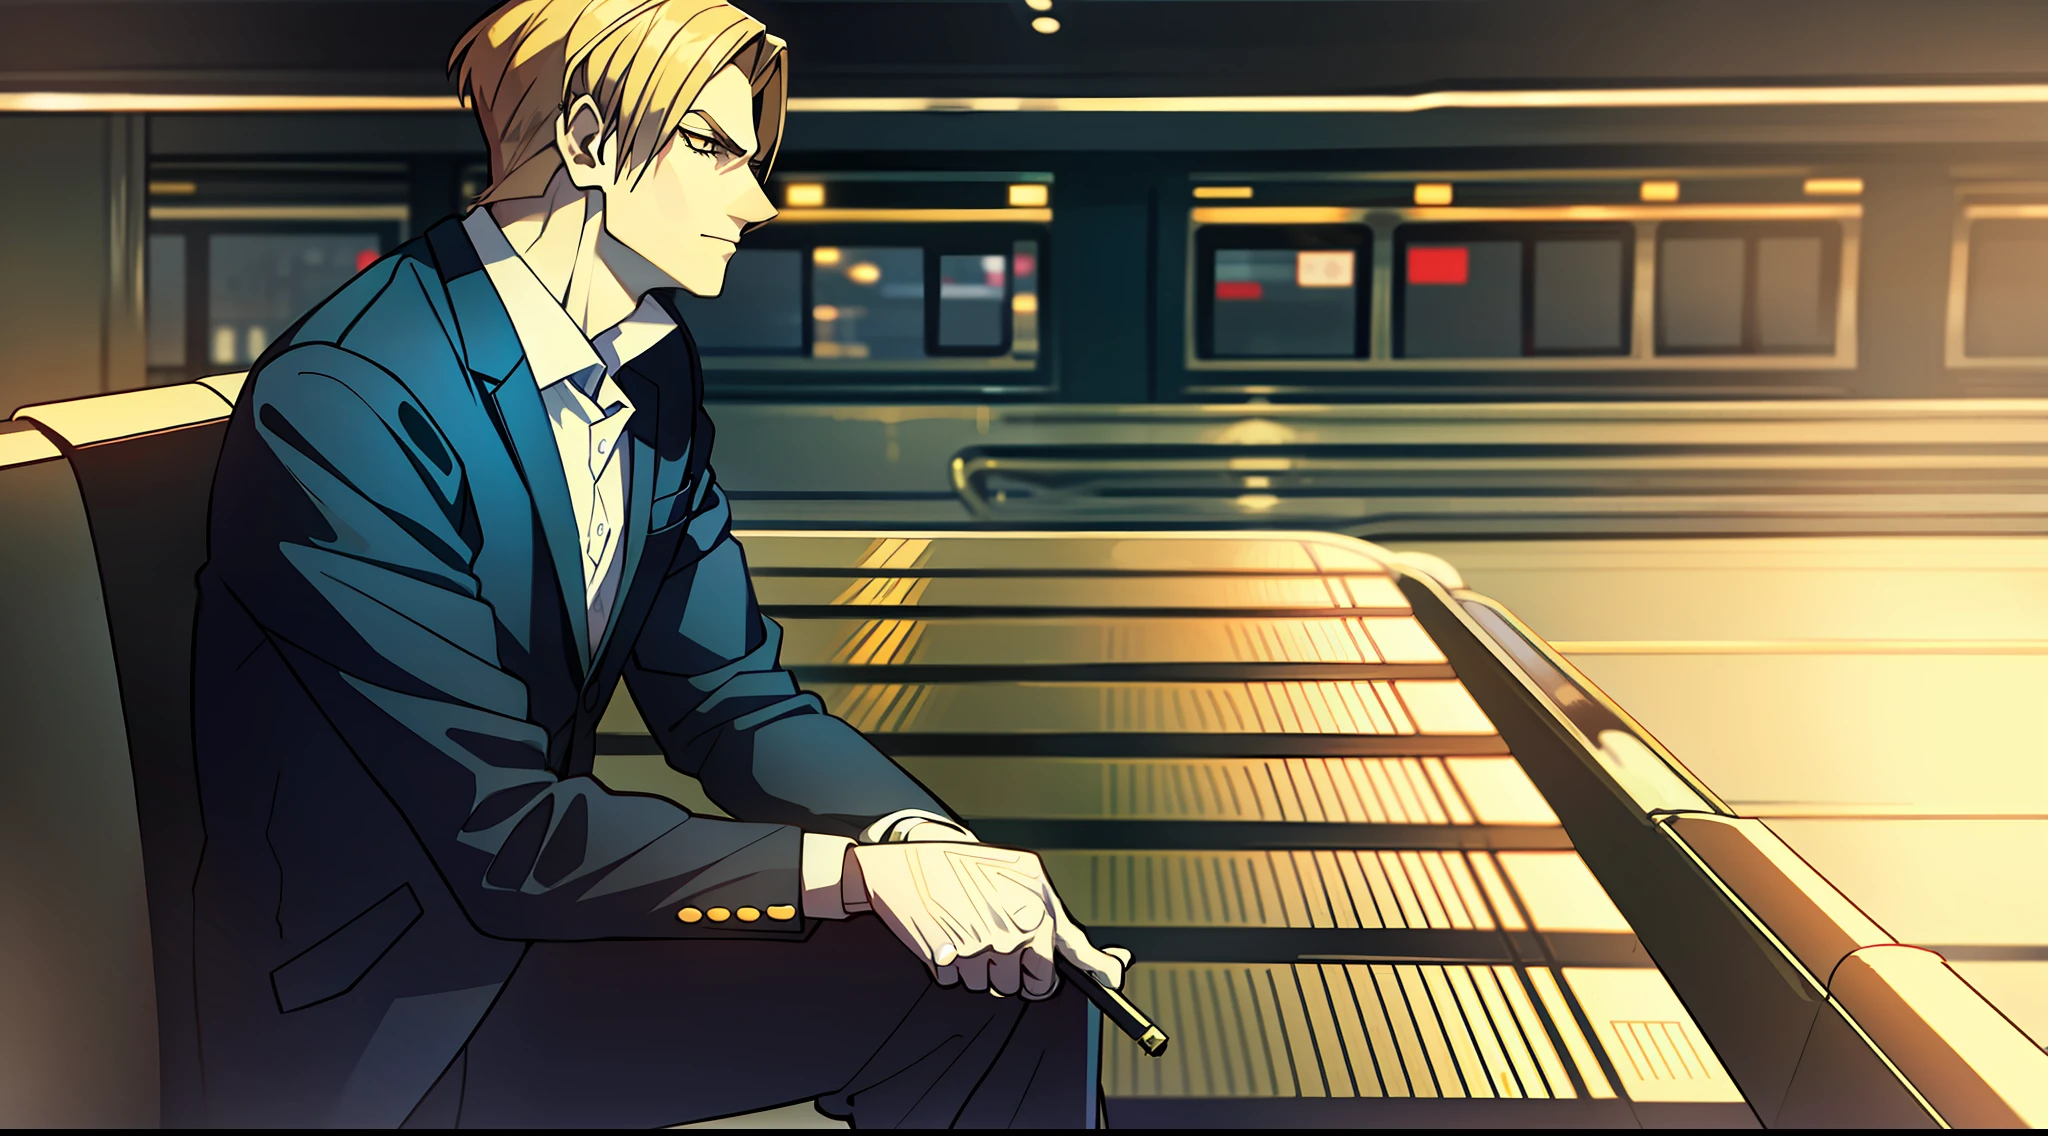 "部分, 穿著西裝抽煙, 盘腿而坐, 火車站黑白背景下一張英俊的臉."